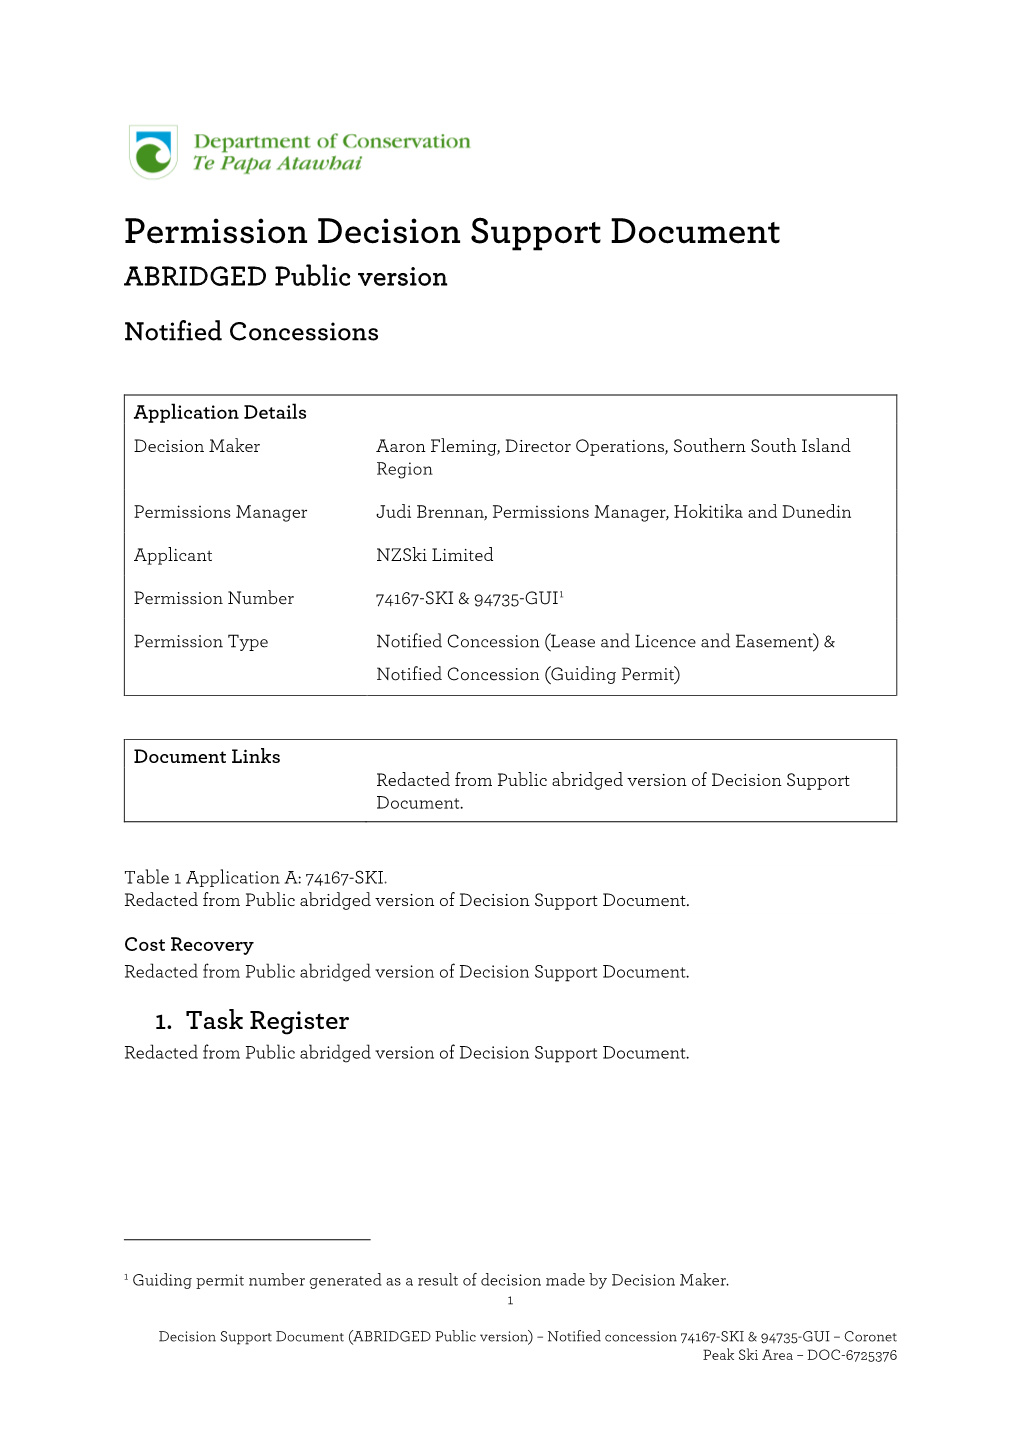 Permission Decision Support Document ABRIDGED Public Version